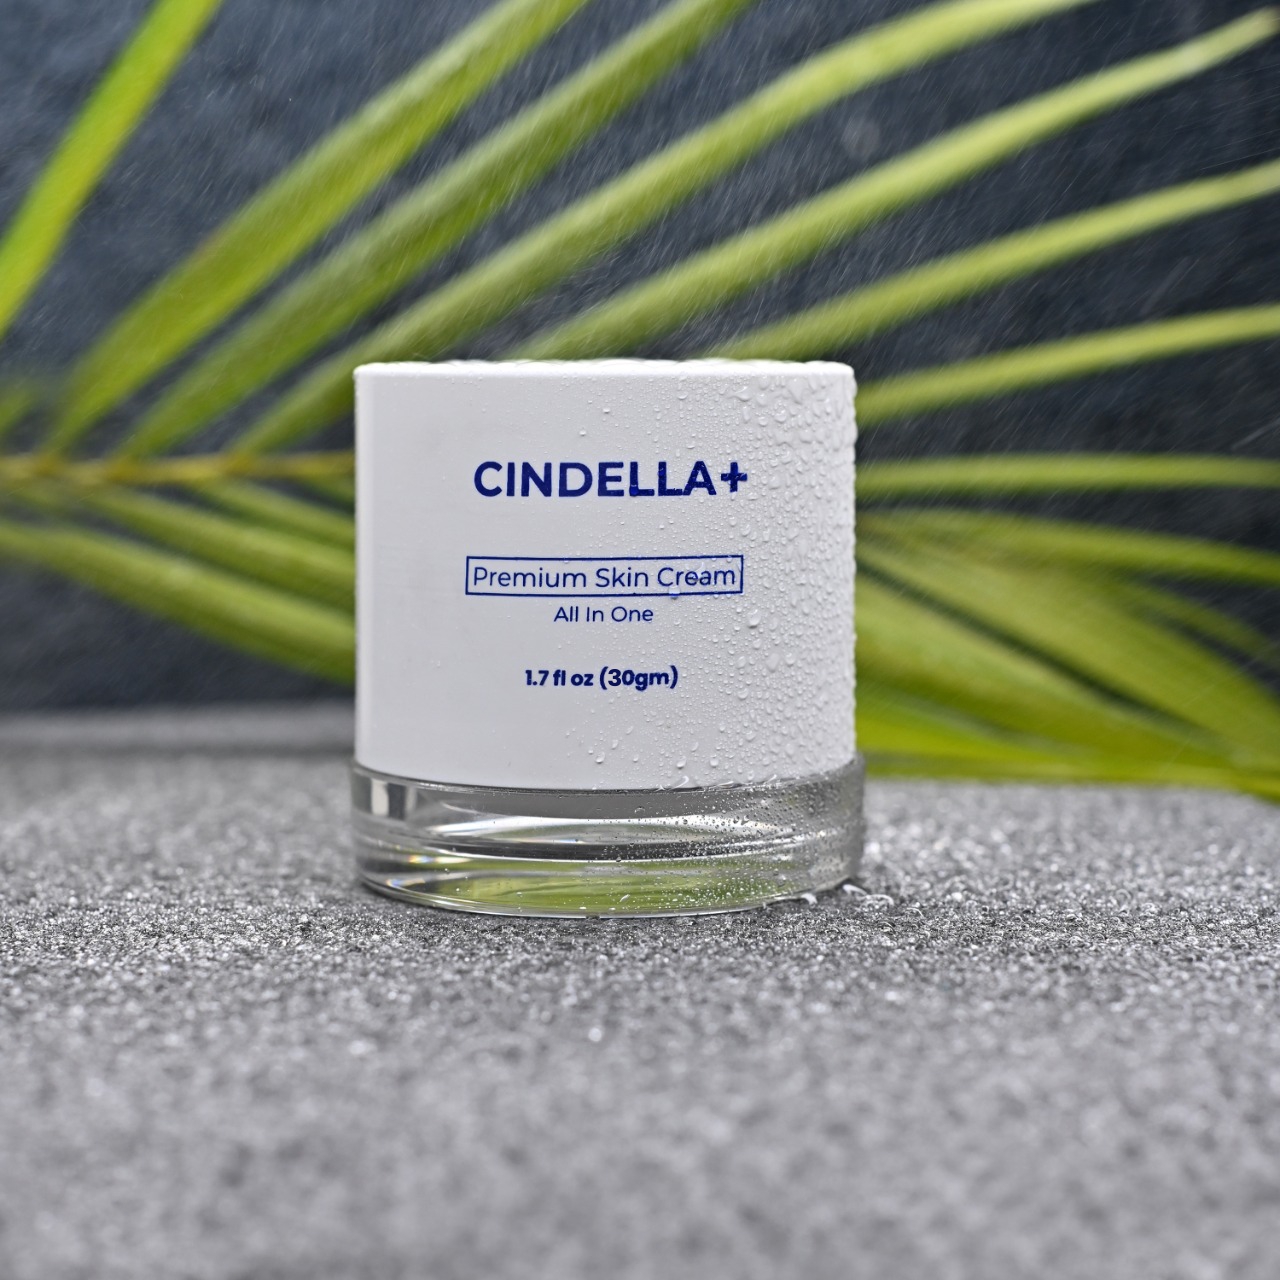 Cindella Plus Premium Skin Cream